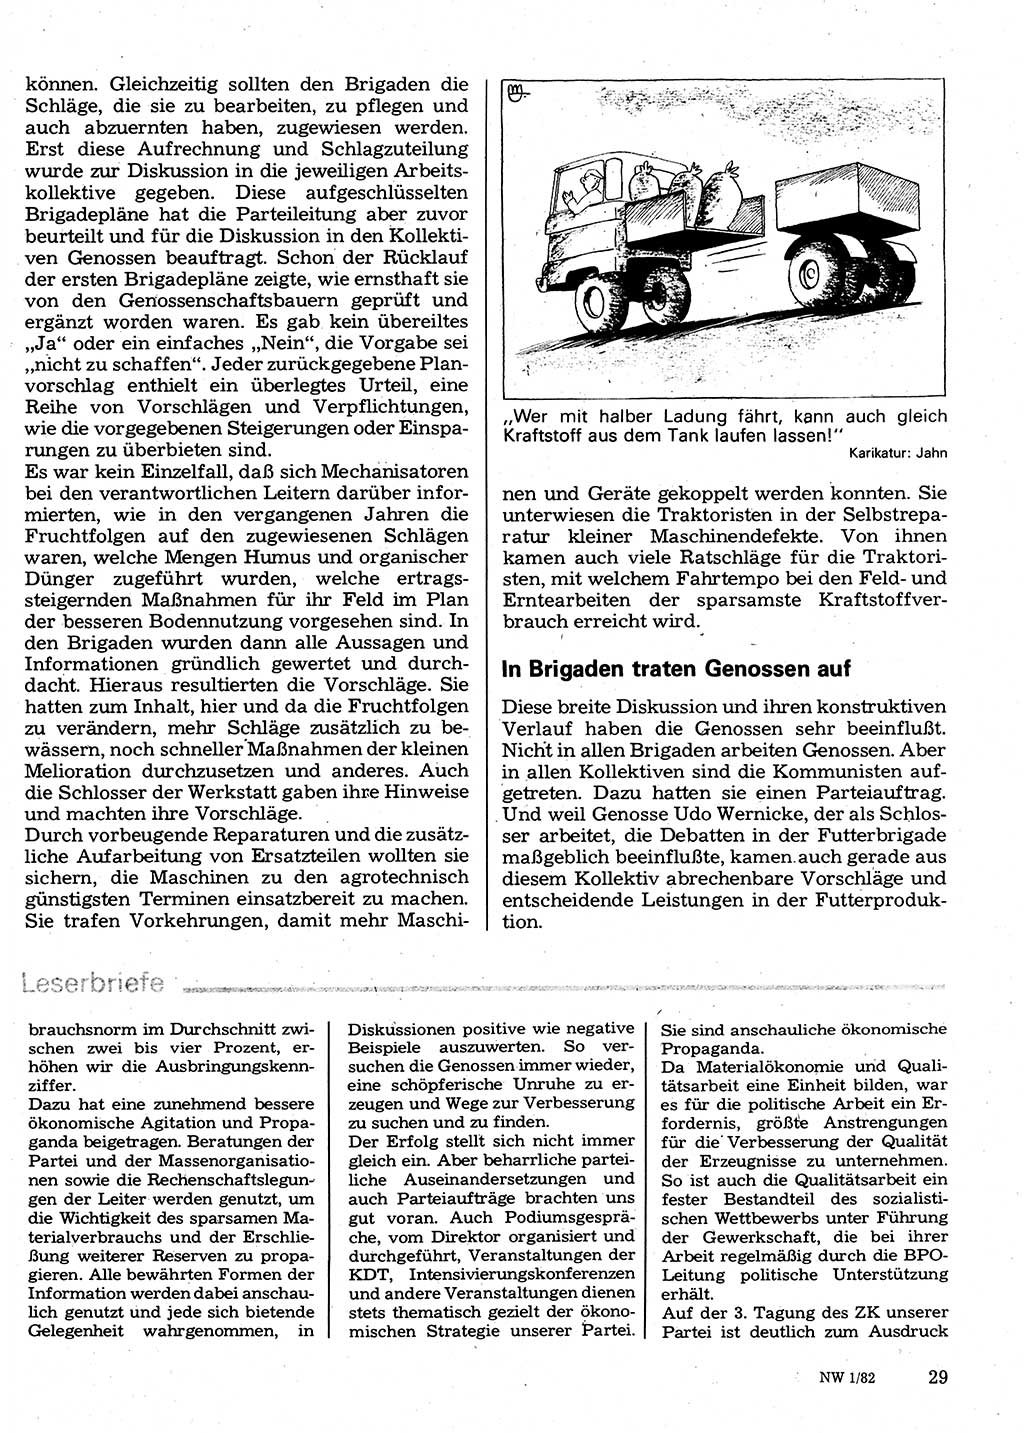 Neuer Weg (NW), Organ des Zentralkomitees (ZK) der SED (Sozialistische Einheitspartei Deutschlands) für Fragen des Parteilebens, 37. Jahrgang [Deutsche Demokratische Republik (DDR)] 1982, Seite 29 (NW ZK SED DDR 1982, S. 29)